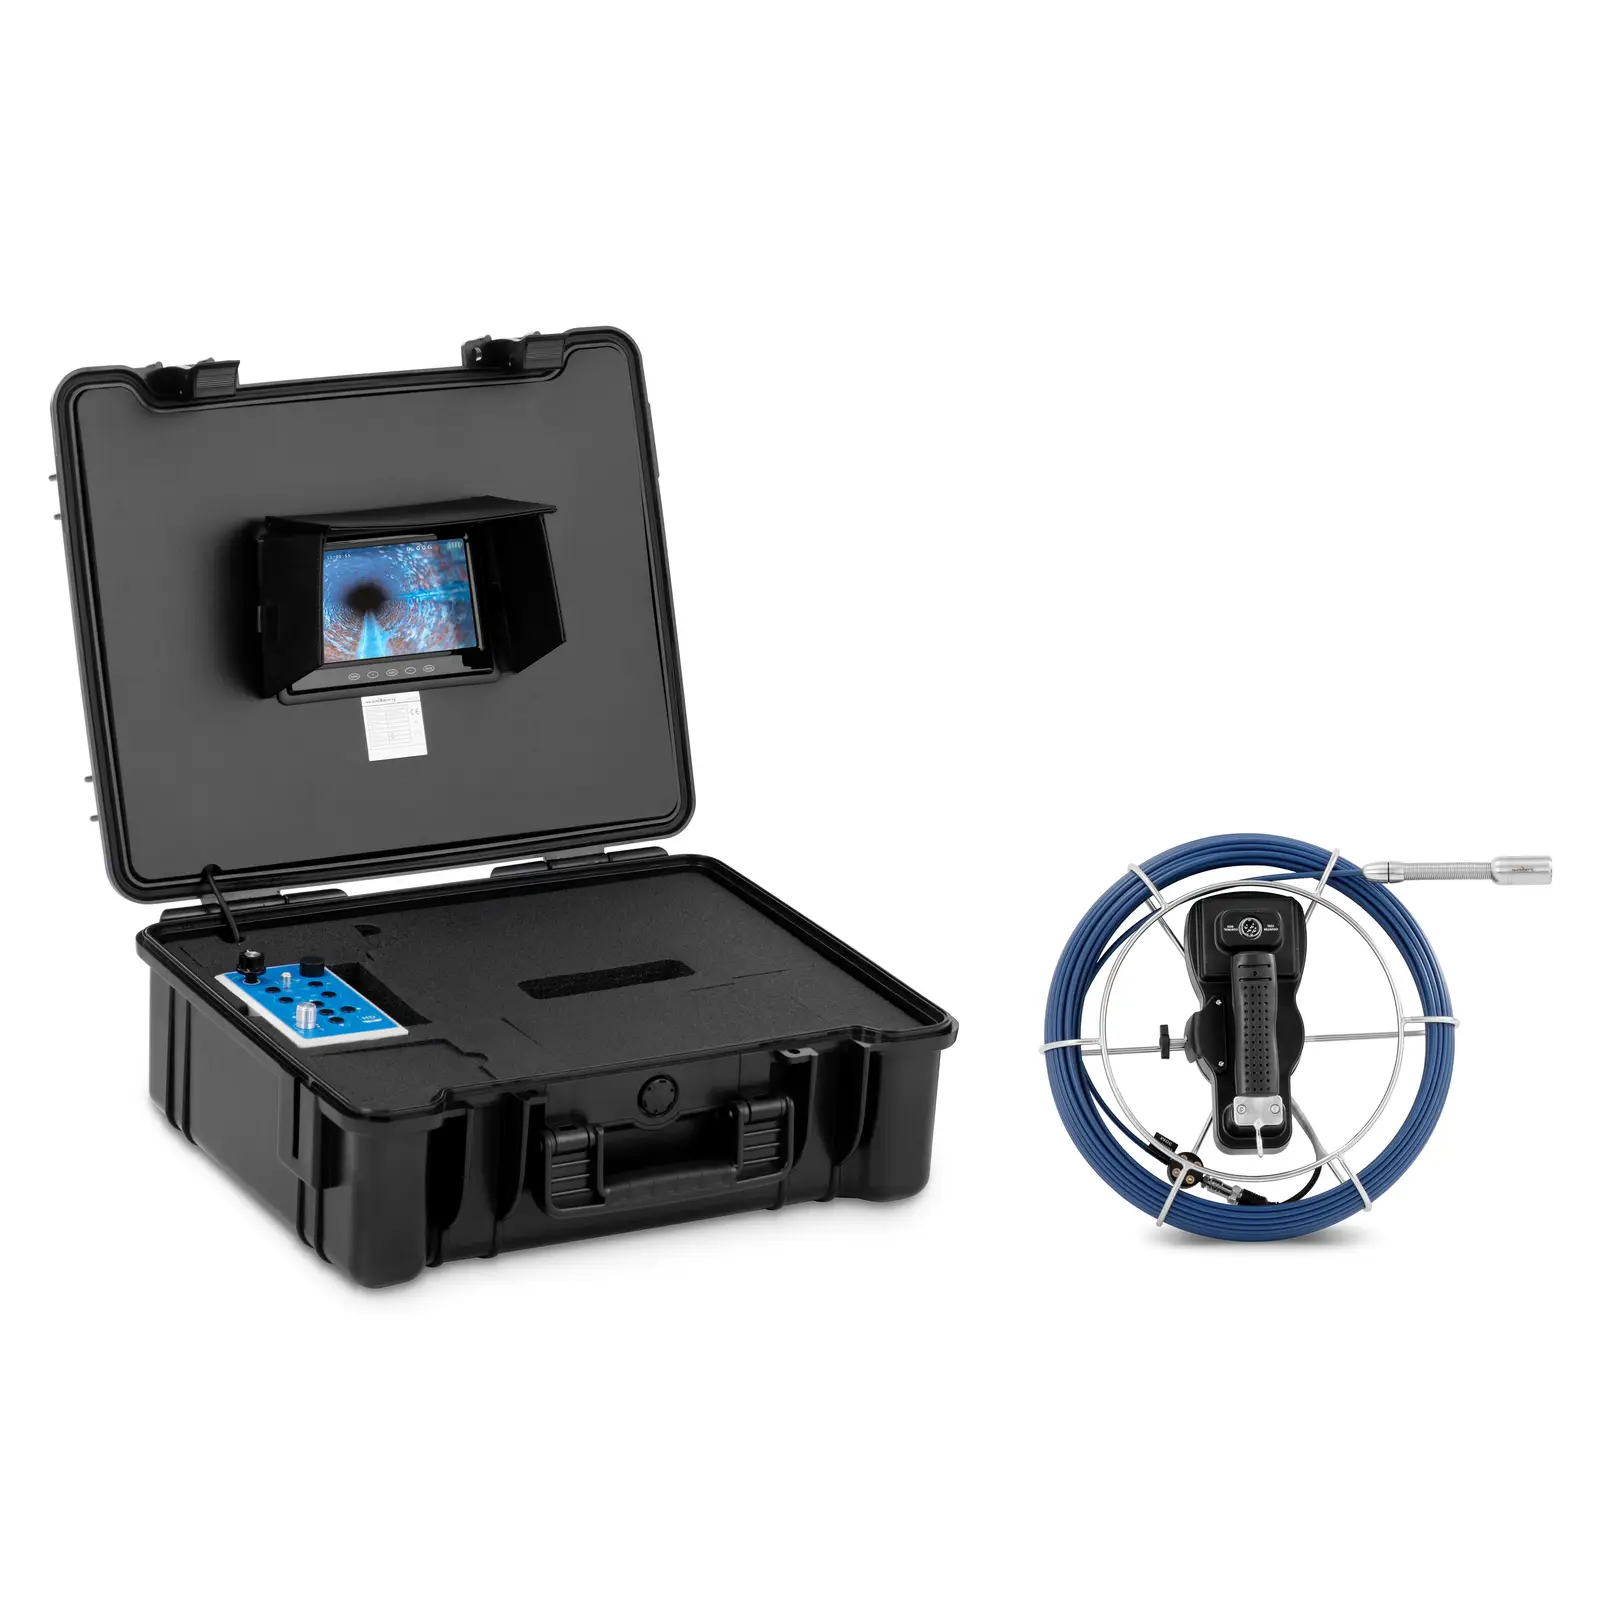 Caméra inspection canalisation - 30 m - 12 LED - Écran couleur IPS de 7 pouces